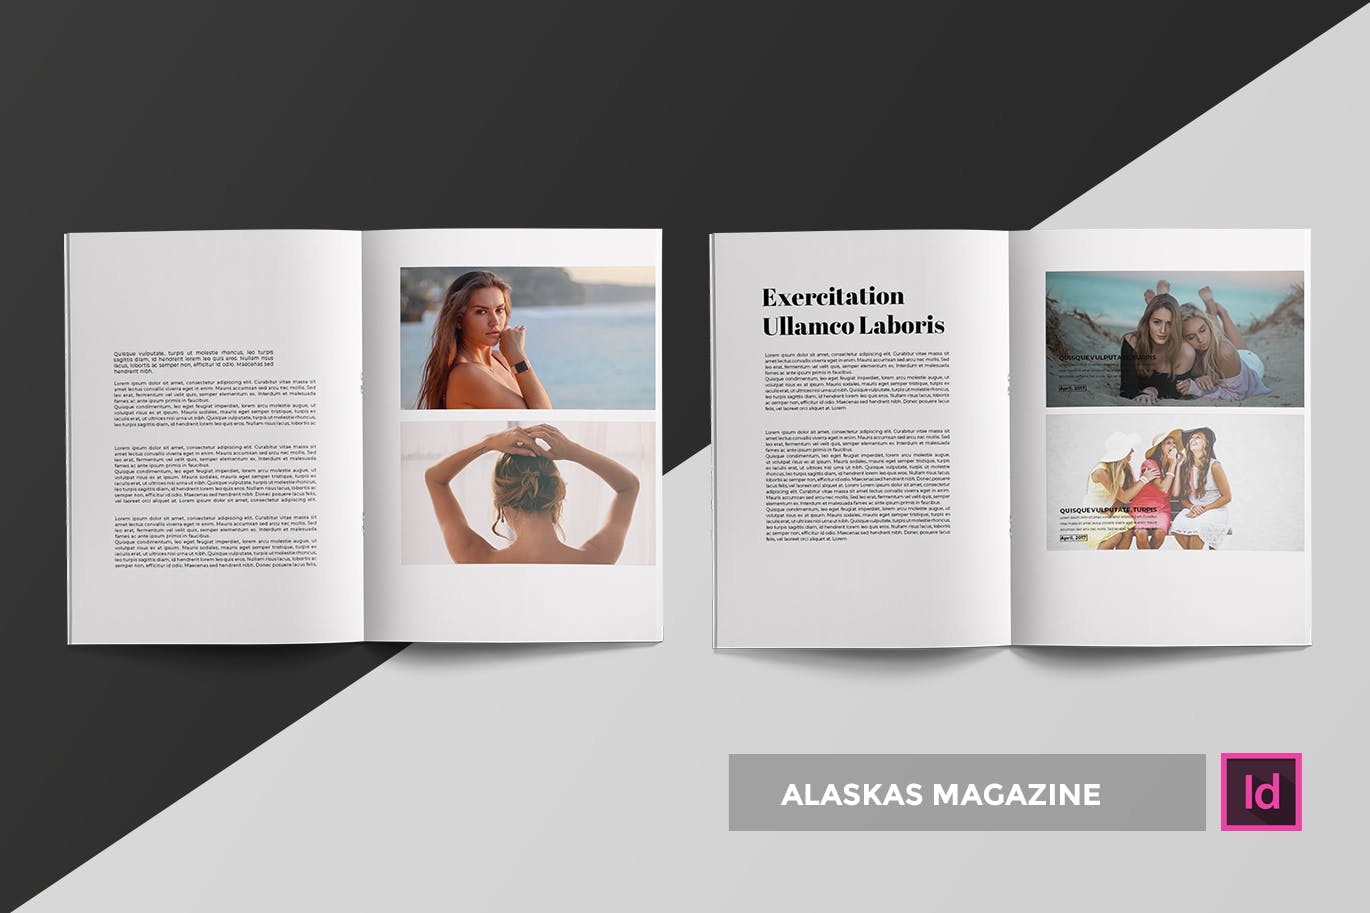 高端人物/服装/访谈主题蚂蚁素材精选杂志版式排版设计INDD模板 Alaskas | Magazine Template插图(1)